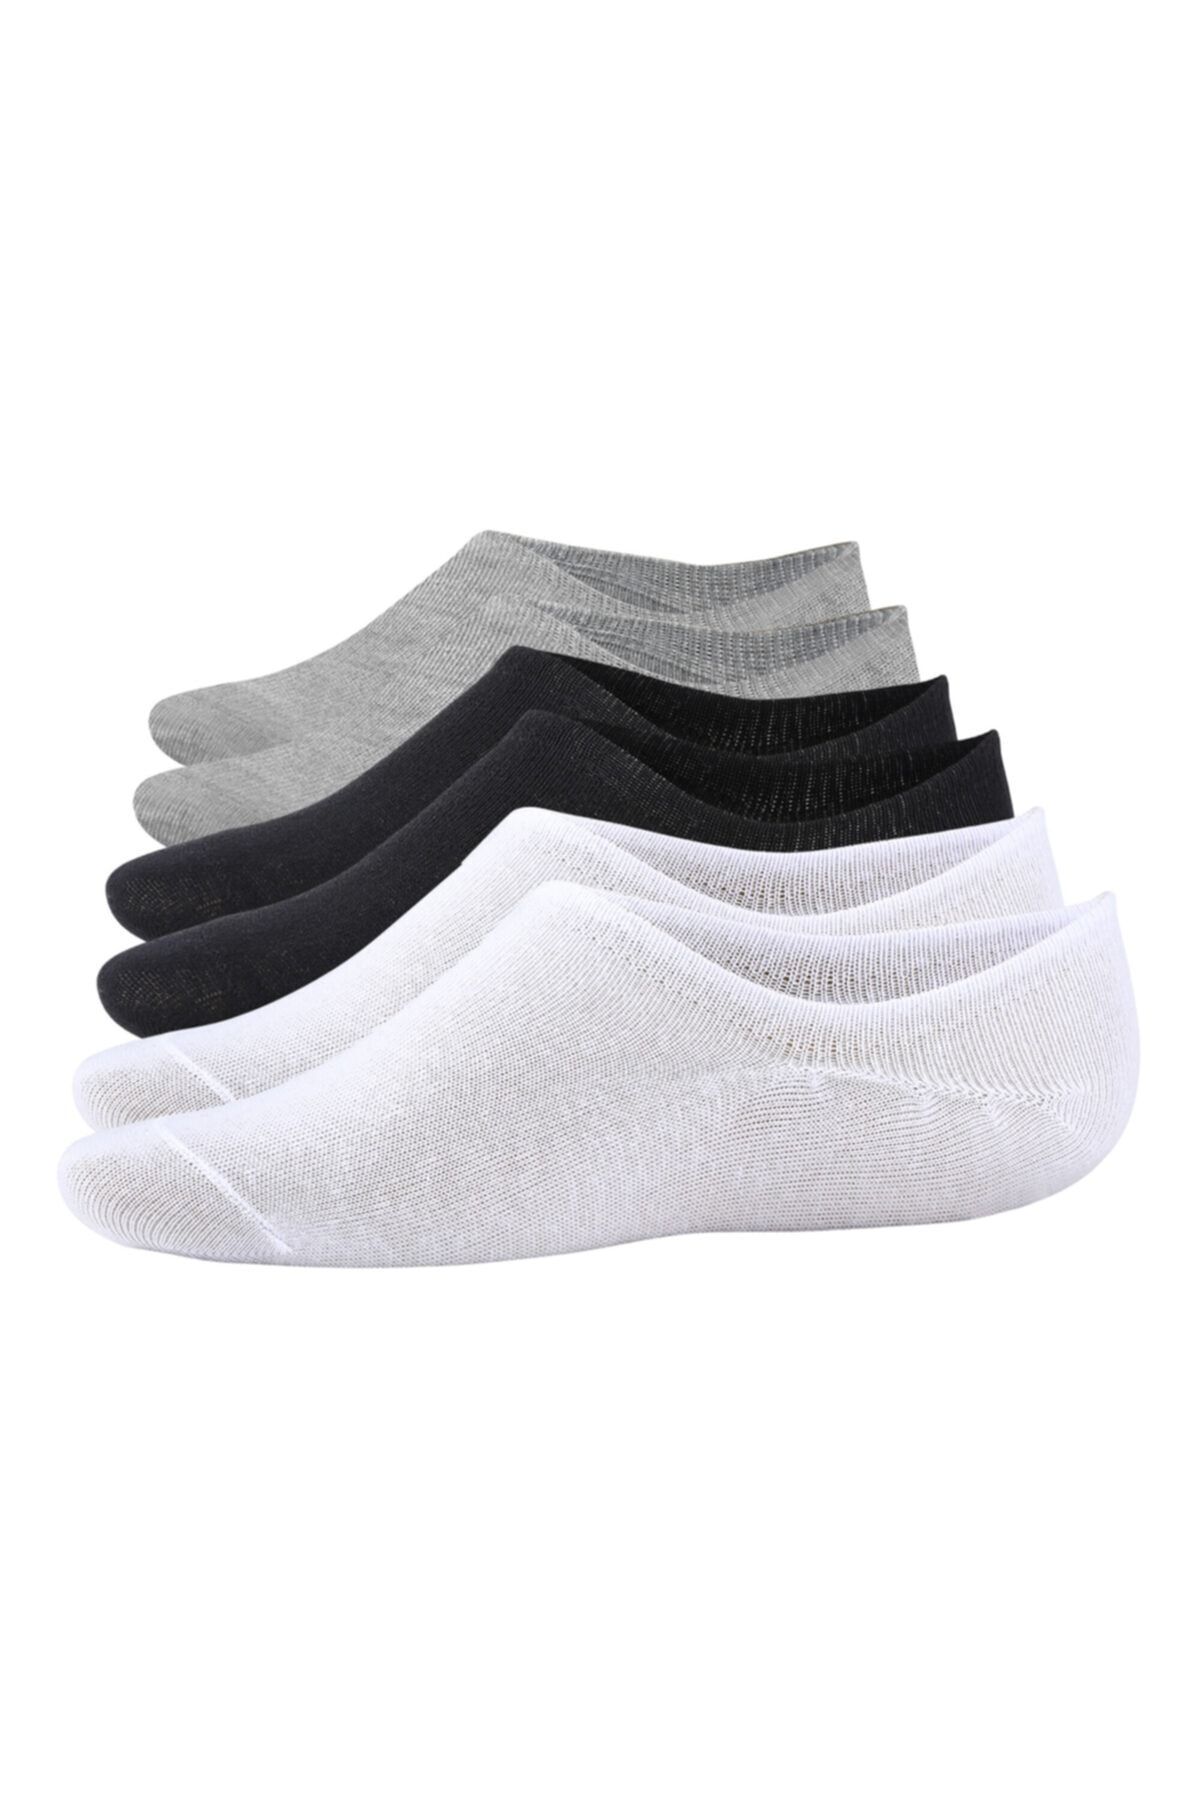 Bolero Unisex 6’lı Pamuklu Sneakers Çorap Siyah – Beyaz – Gri